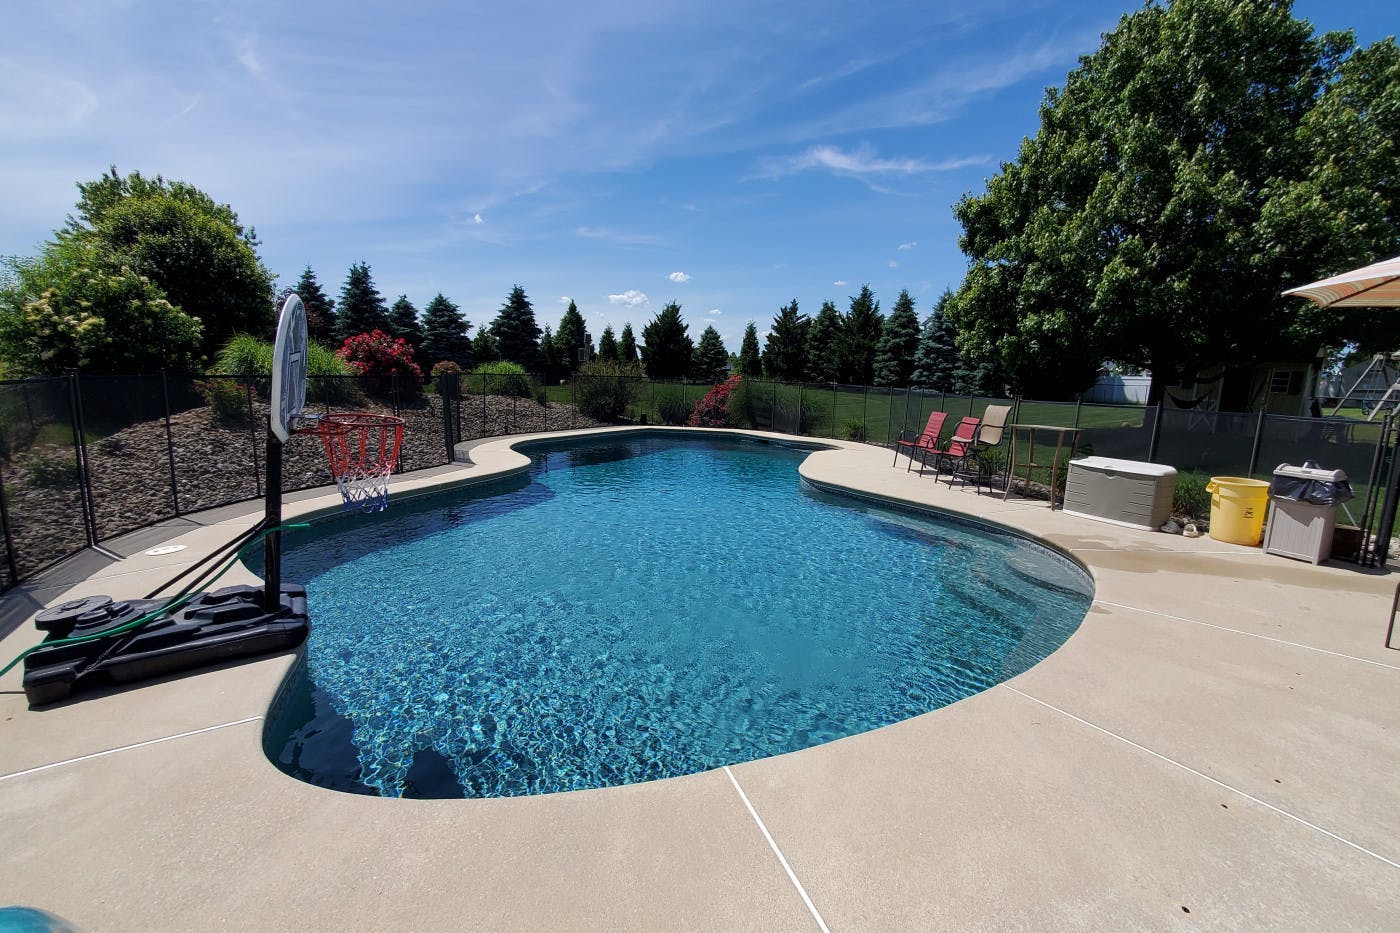 Backyard oasis with custom pool